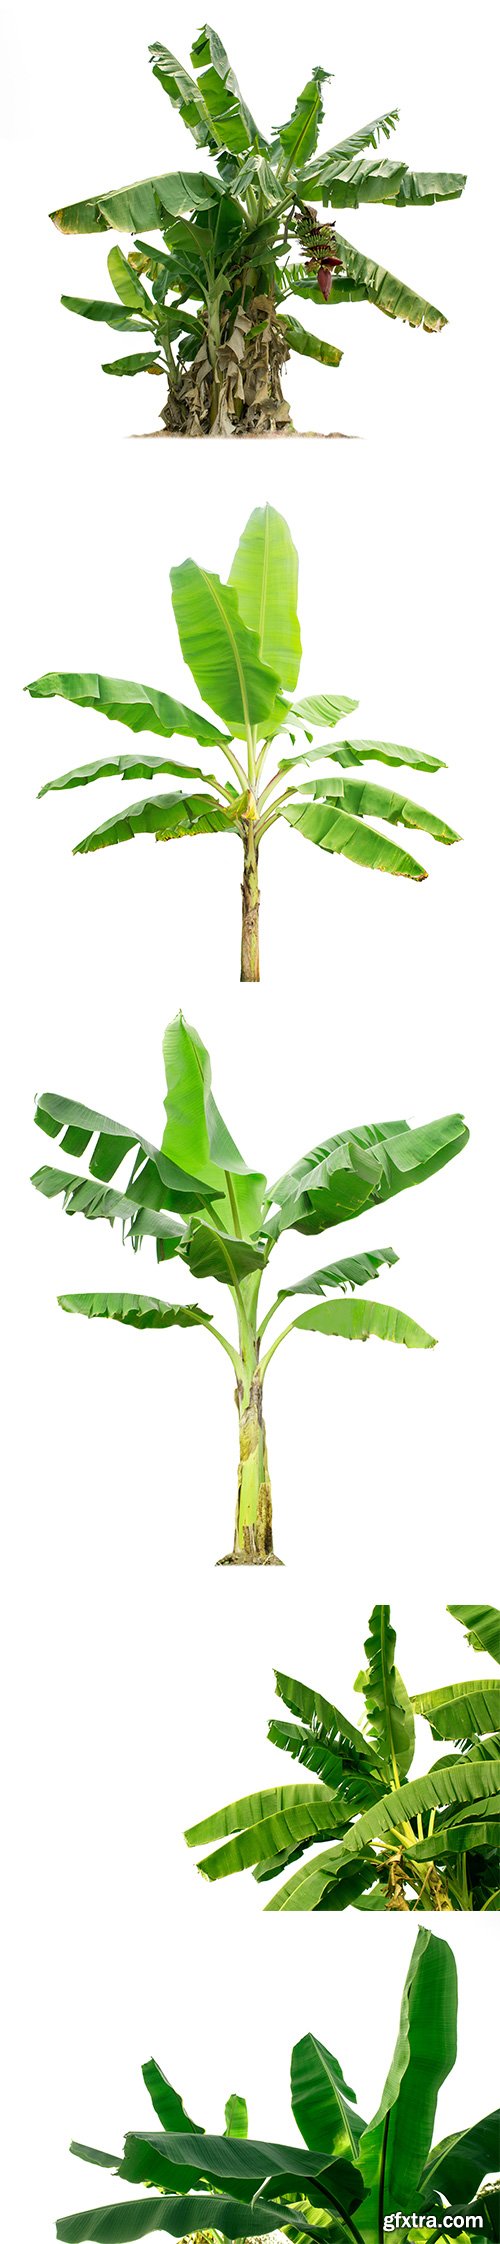 Banana Tree Isolated - 8xJPGs